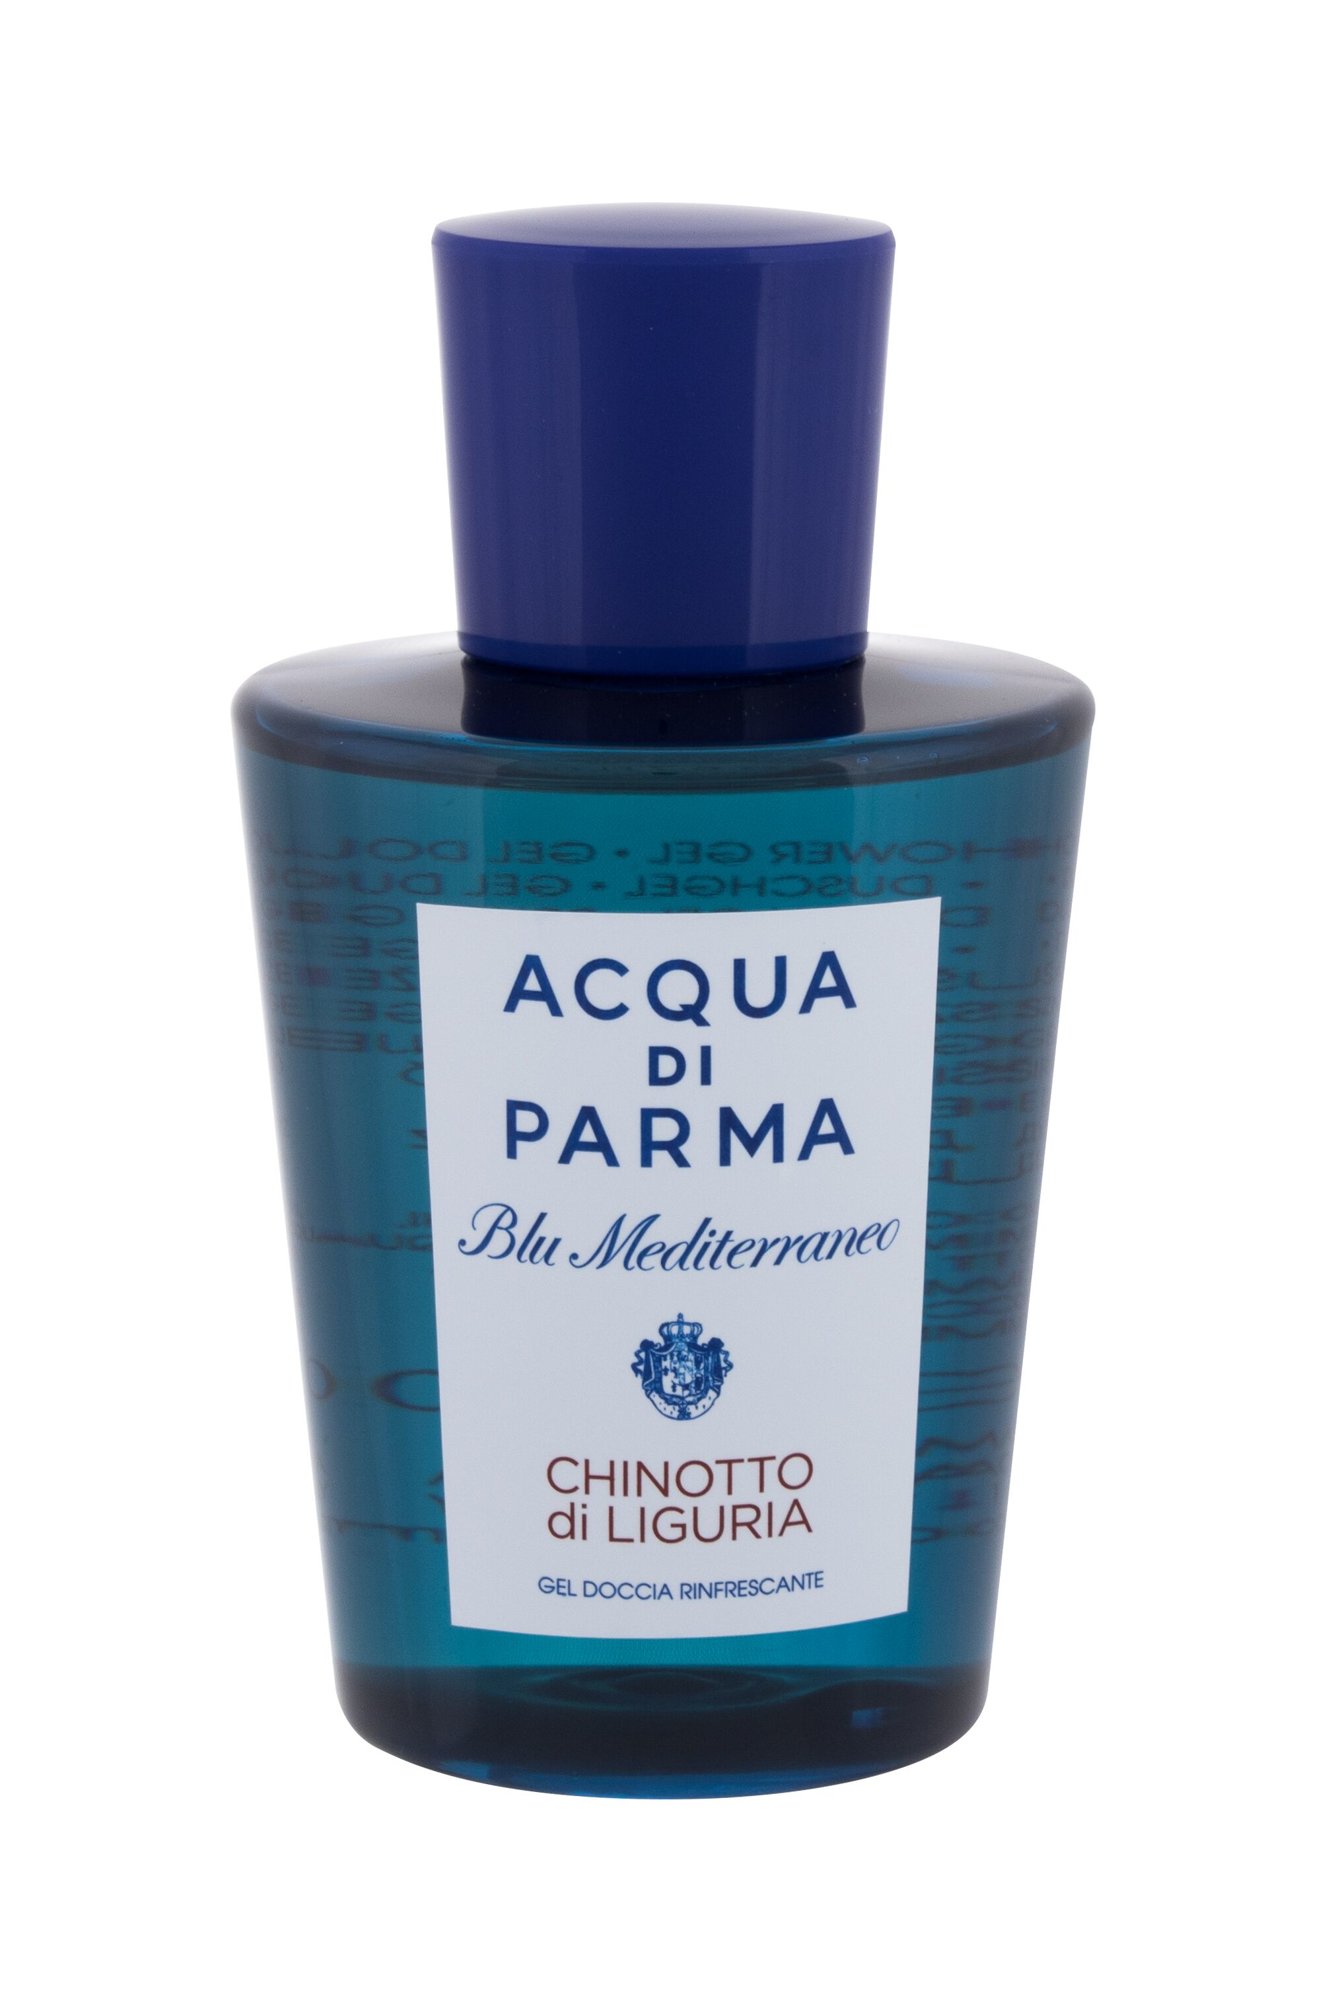 Acqua Di Parma Blu Mediterraneo Chinotto di Liguria 200ml NIŠINIAI dušo želė